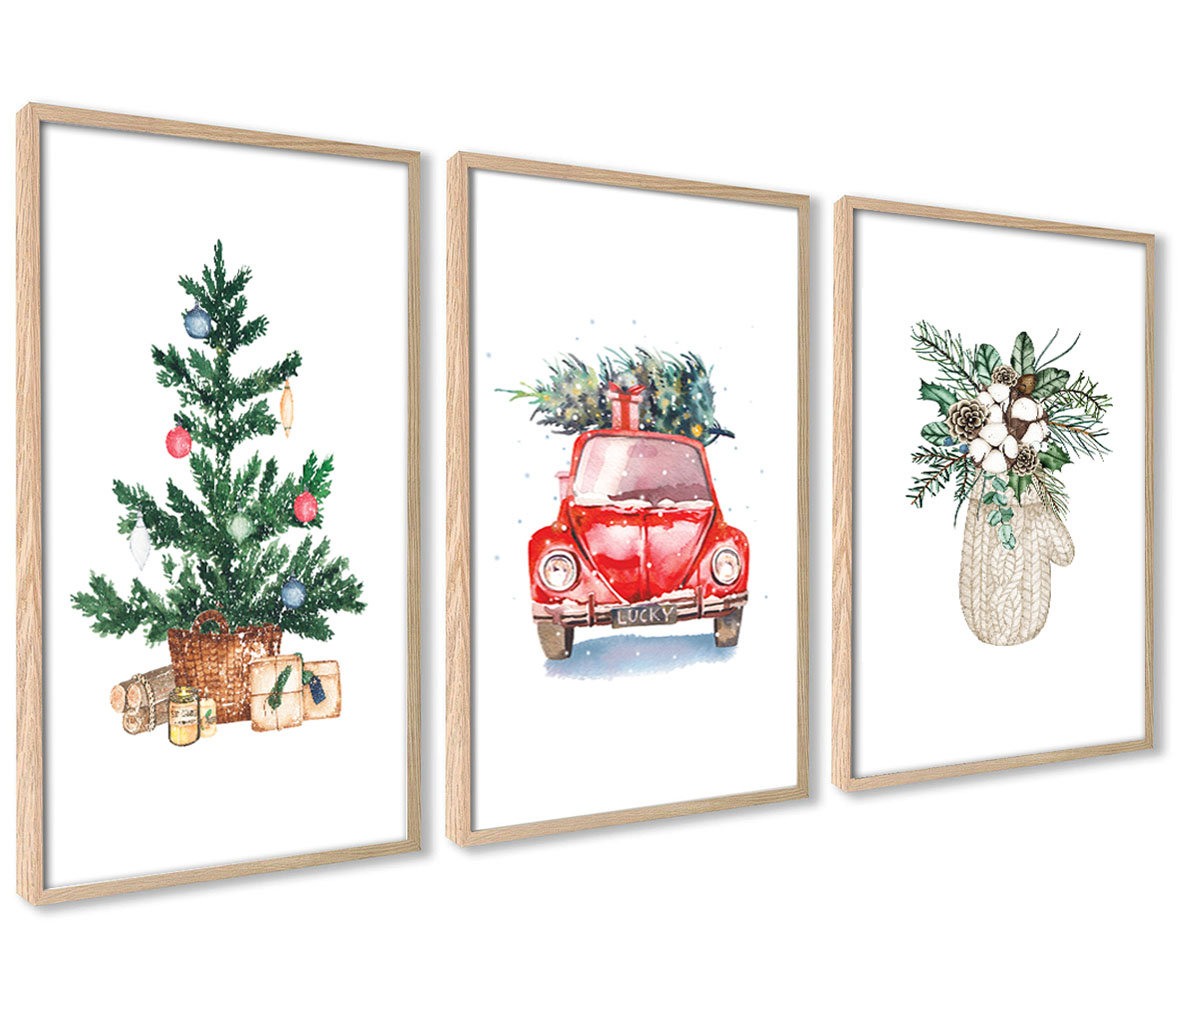 Plakaty Świąteczne Zimowe Boże Narodzenie Choinka Agart Deco Sklep Empikcom 3242